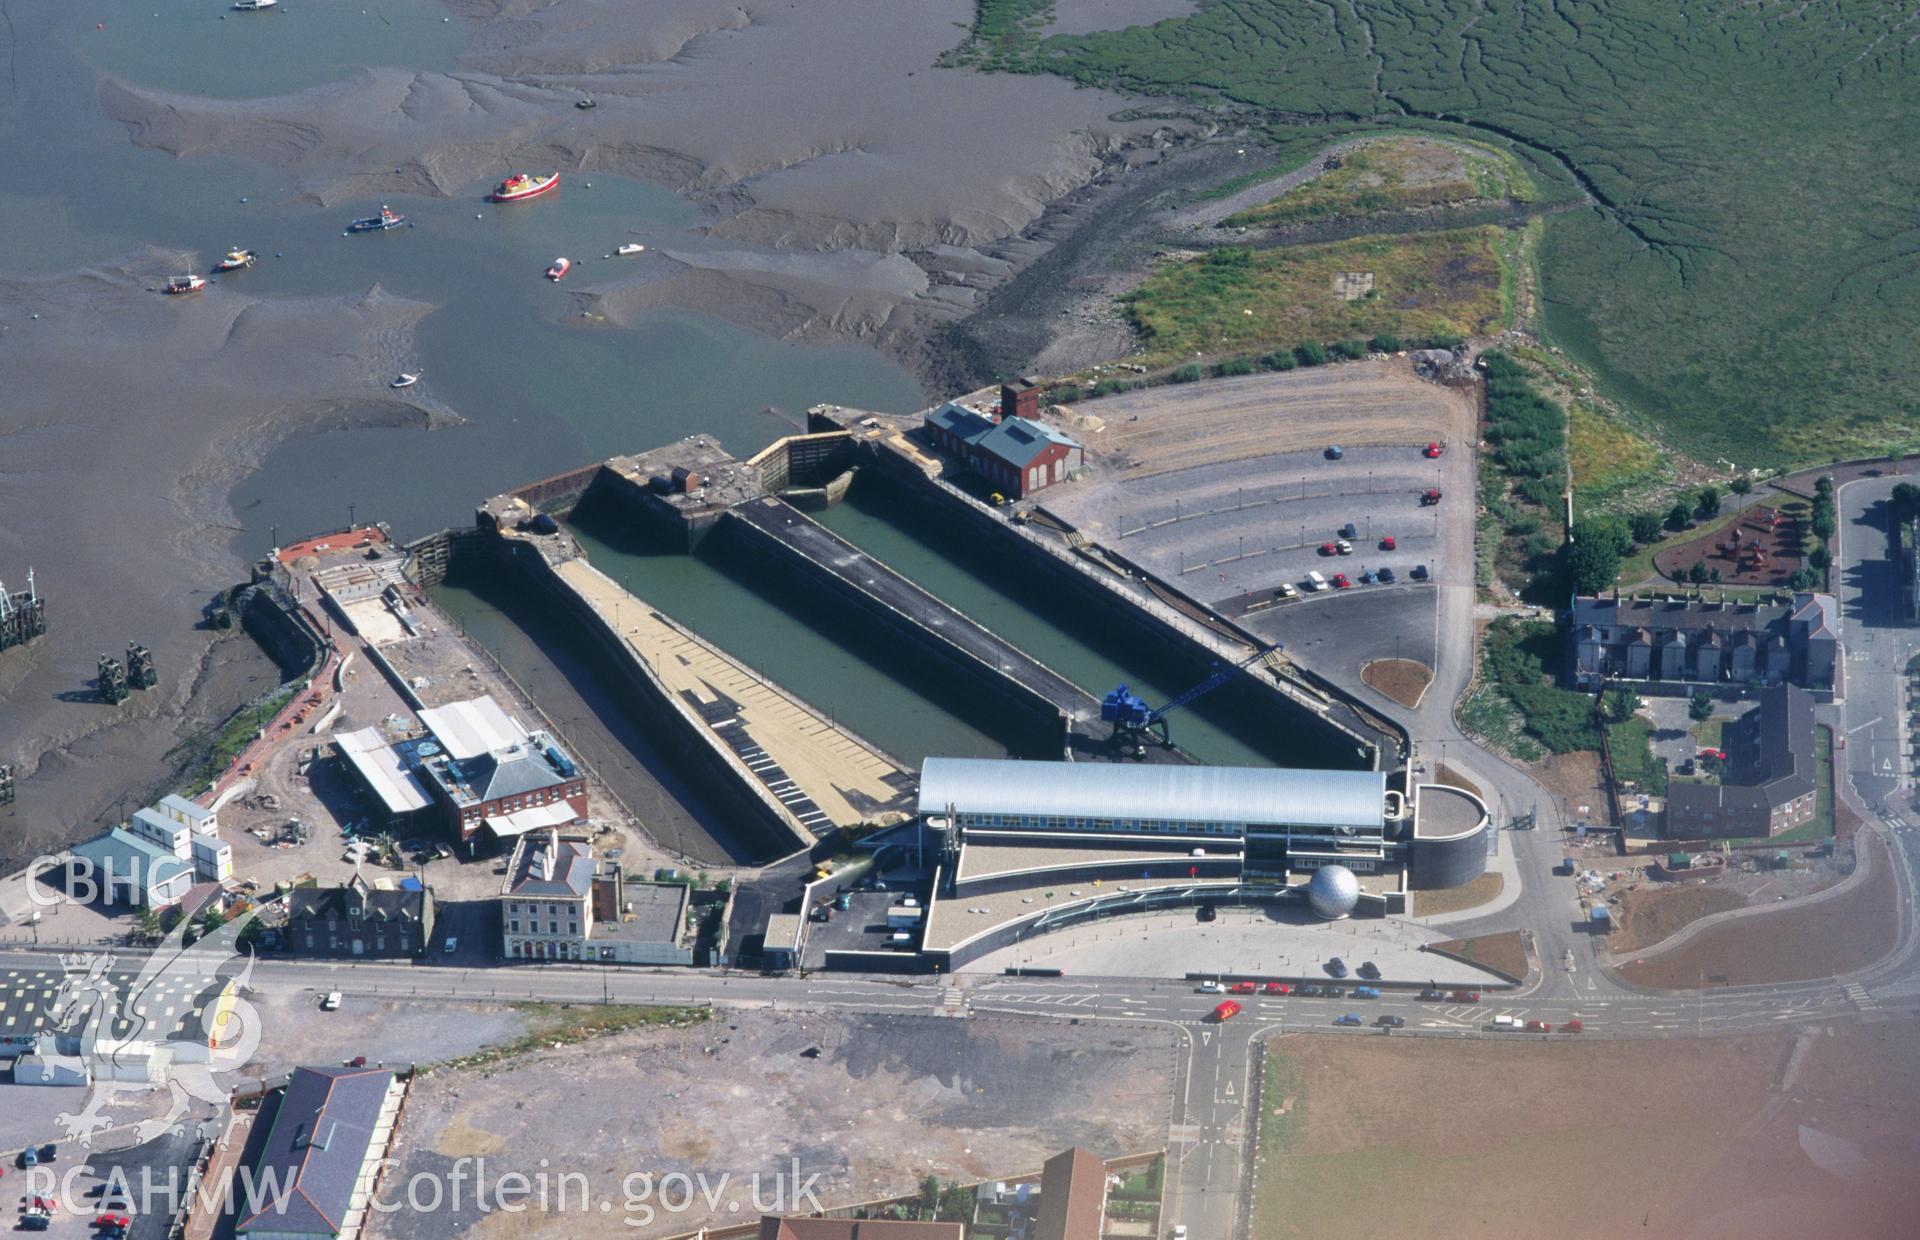 RCAHMW colour oblique aerial photograph of Mountstuart Shipbuilding Yard taken on 20/07/1995 by C.R. Musson